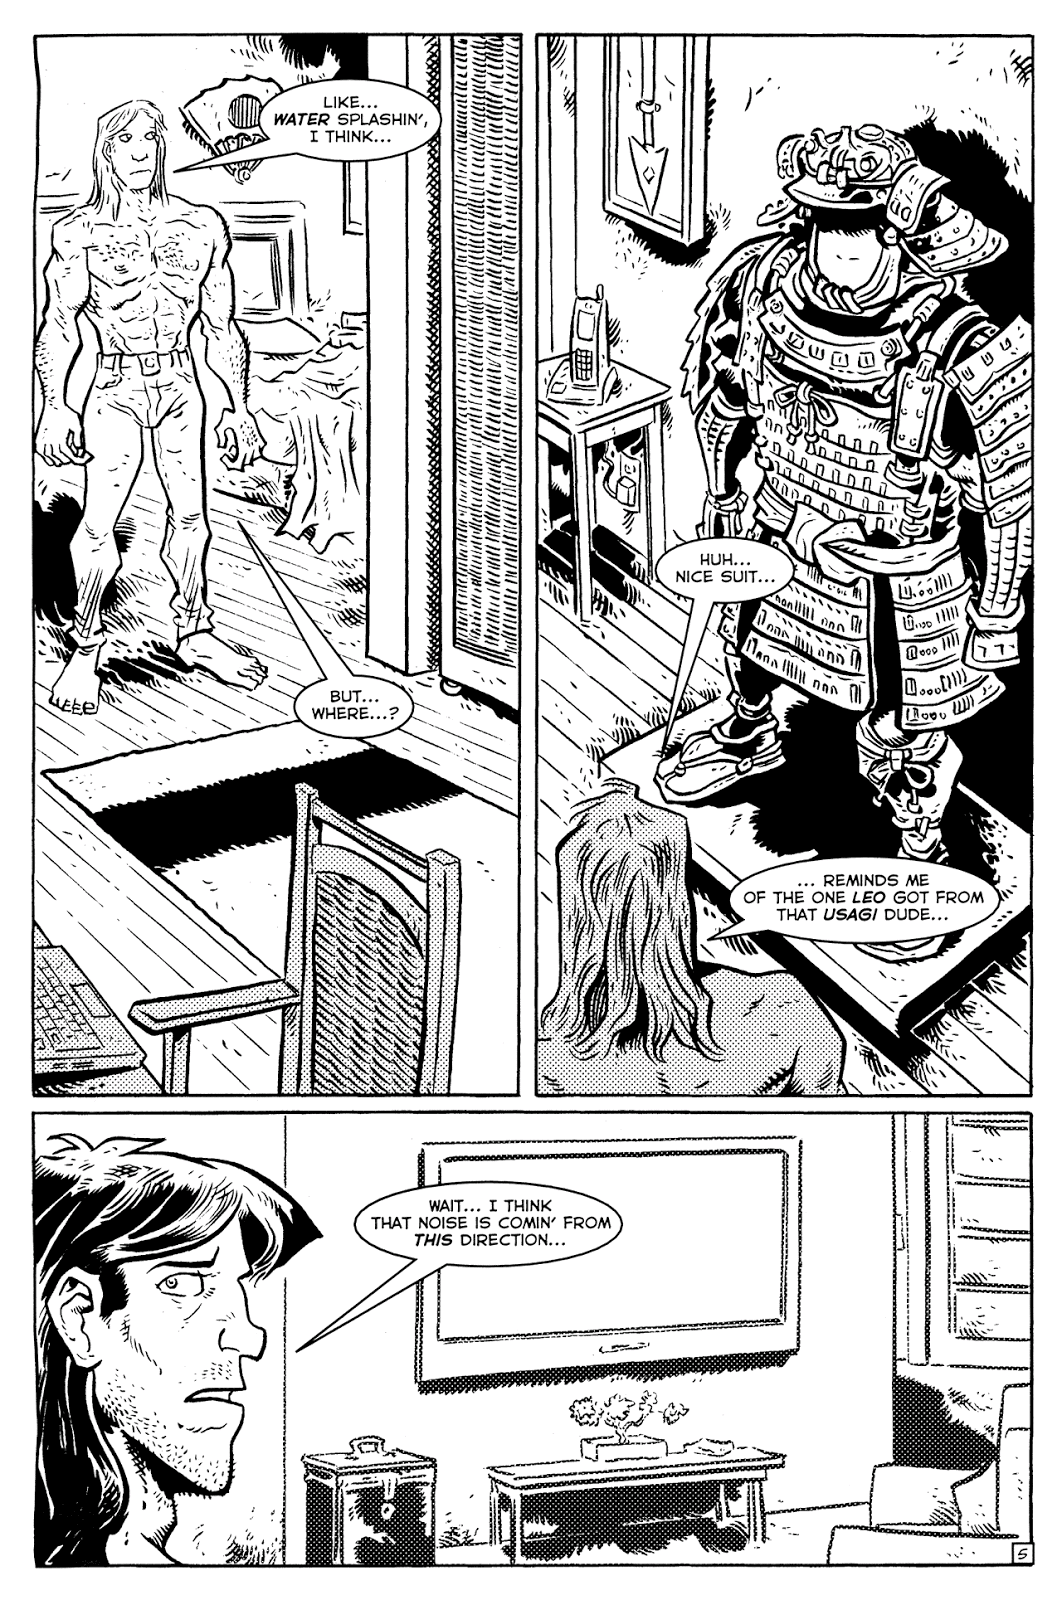 TMNT: Teenage Mutant Ninja Turtles issue 30 - Page 7